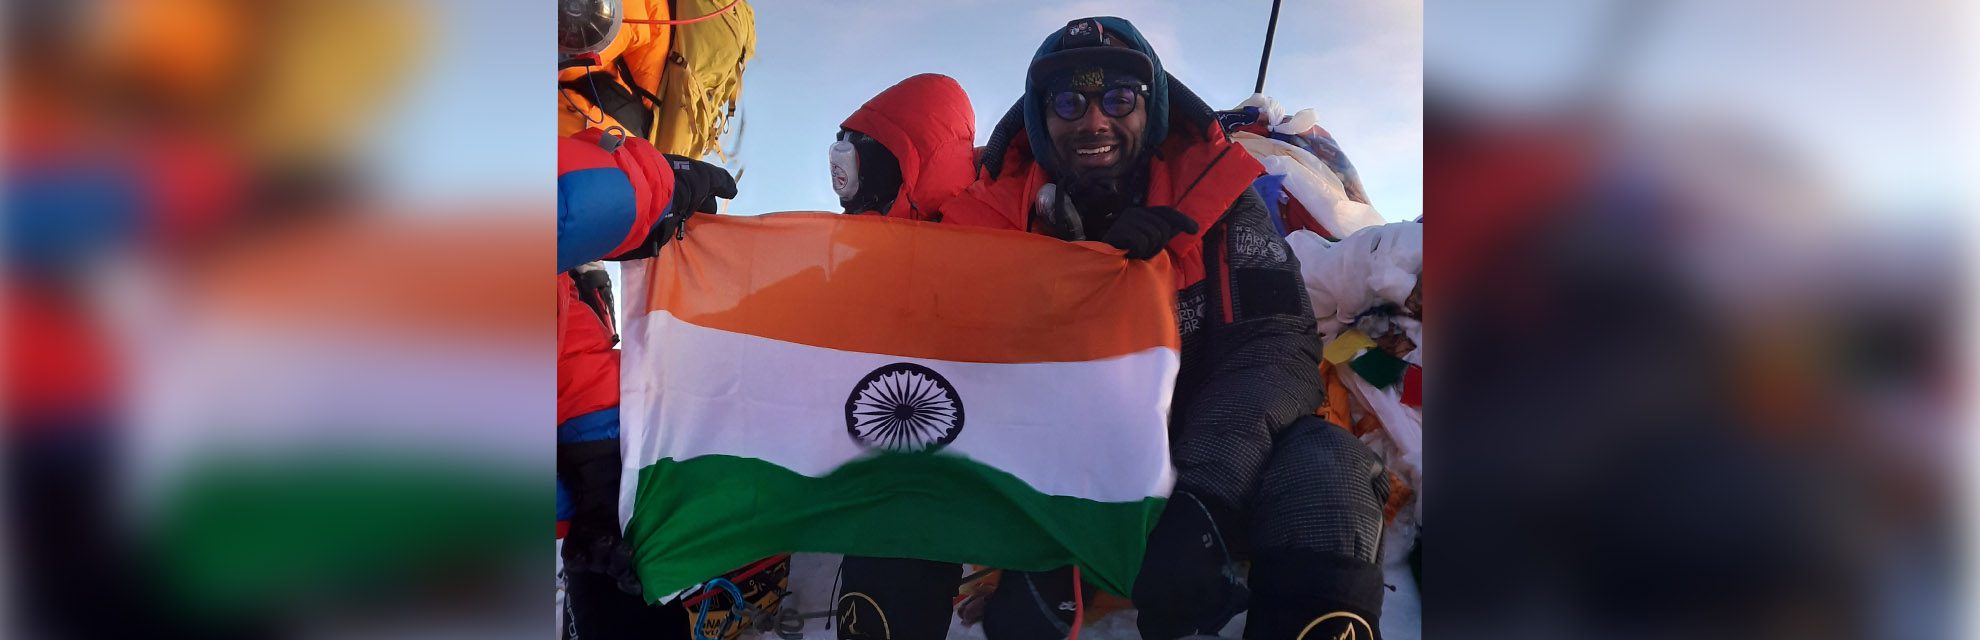 سجل متسلق الجبال الهندي المولد ساتيش جوجينيني رقمًا قياسيًا جديدًا من خلال تلخيص جبل إيفرست وجبل لوتس في غضون 20 ساعة